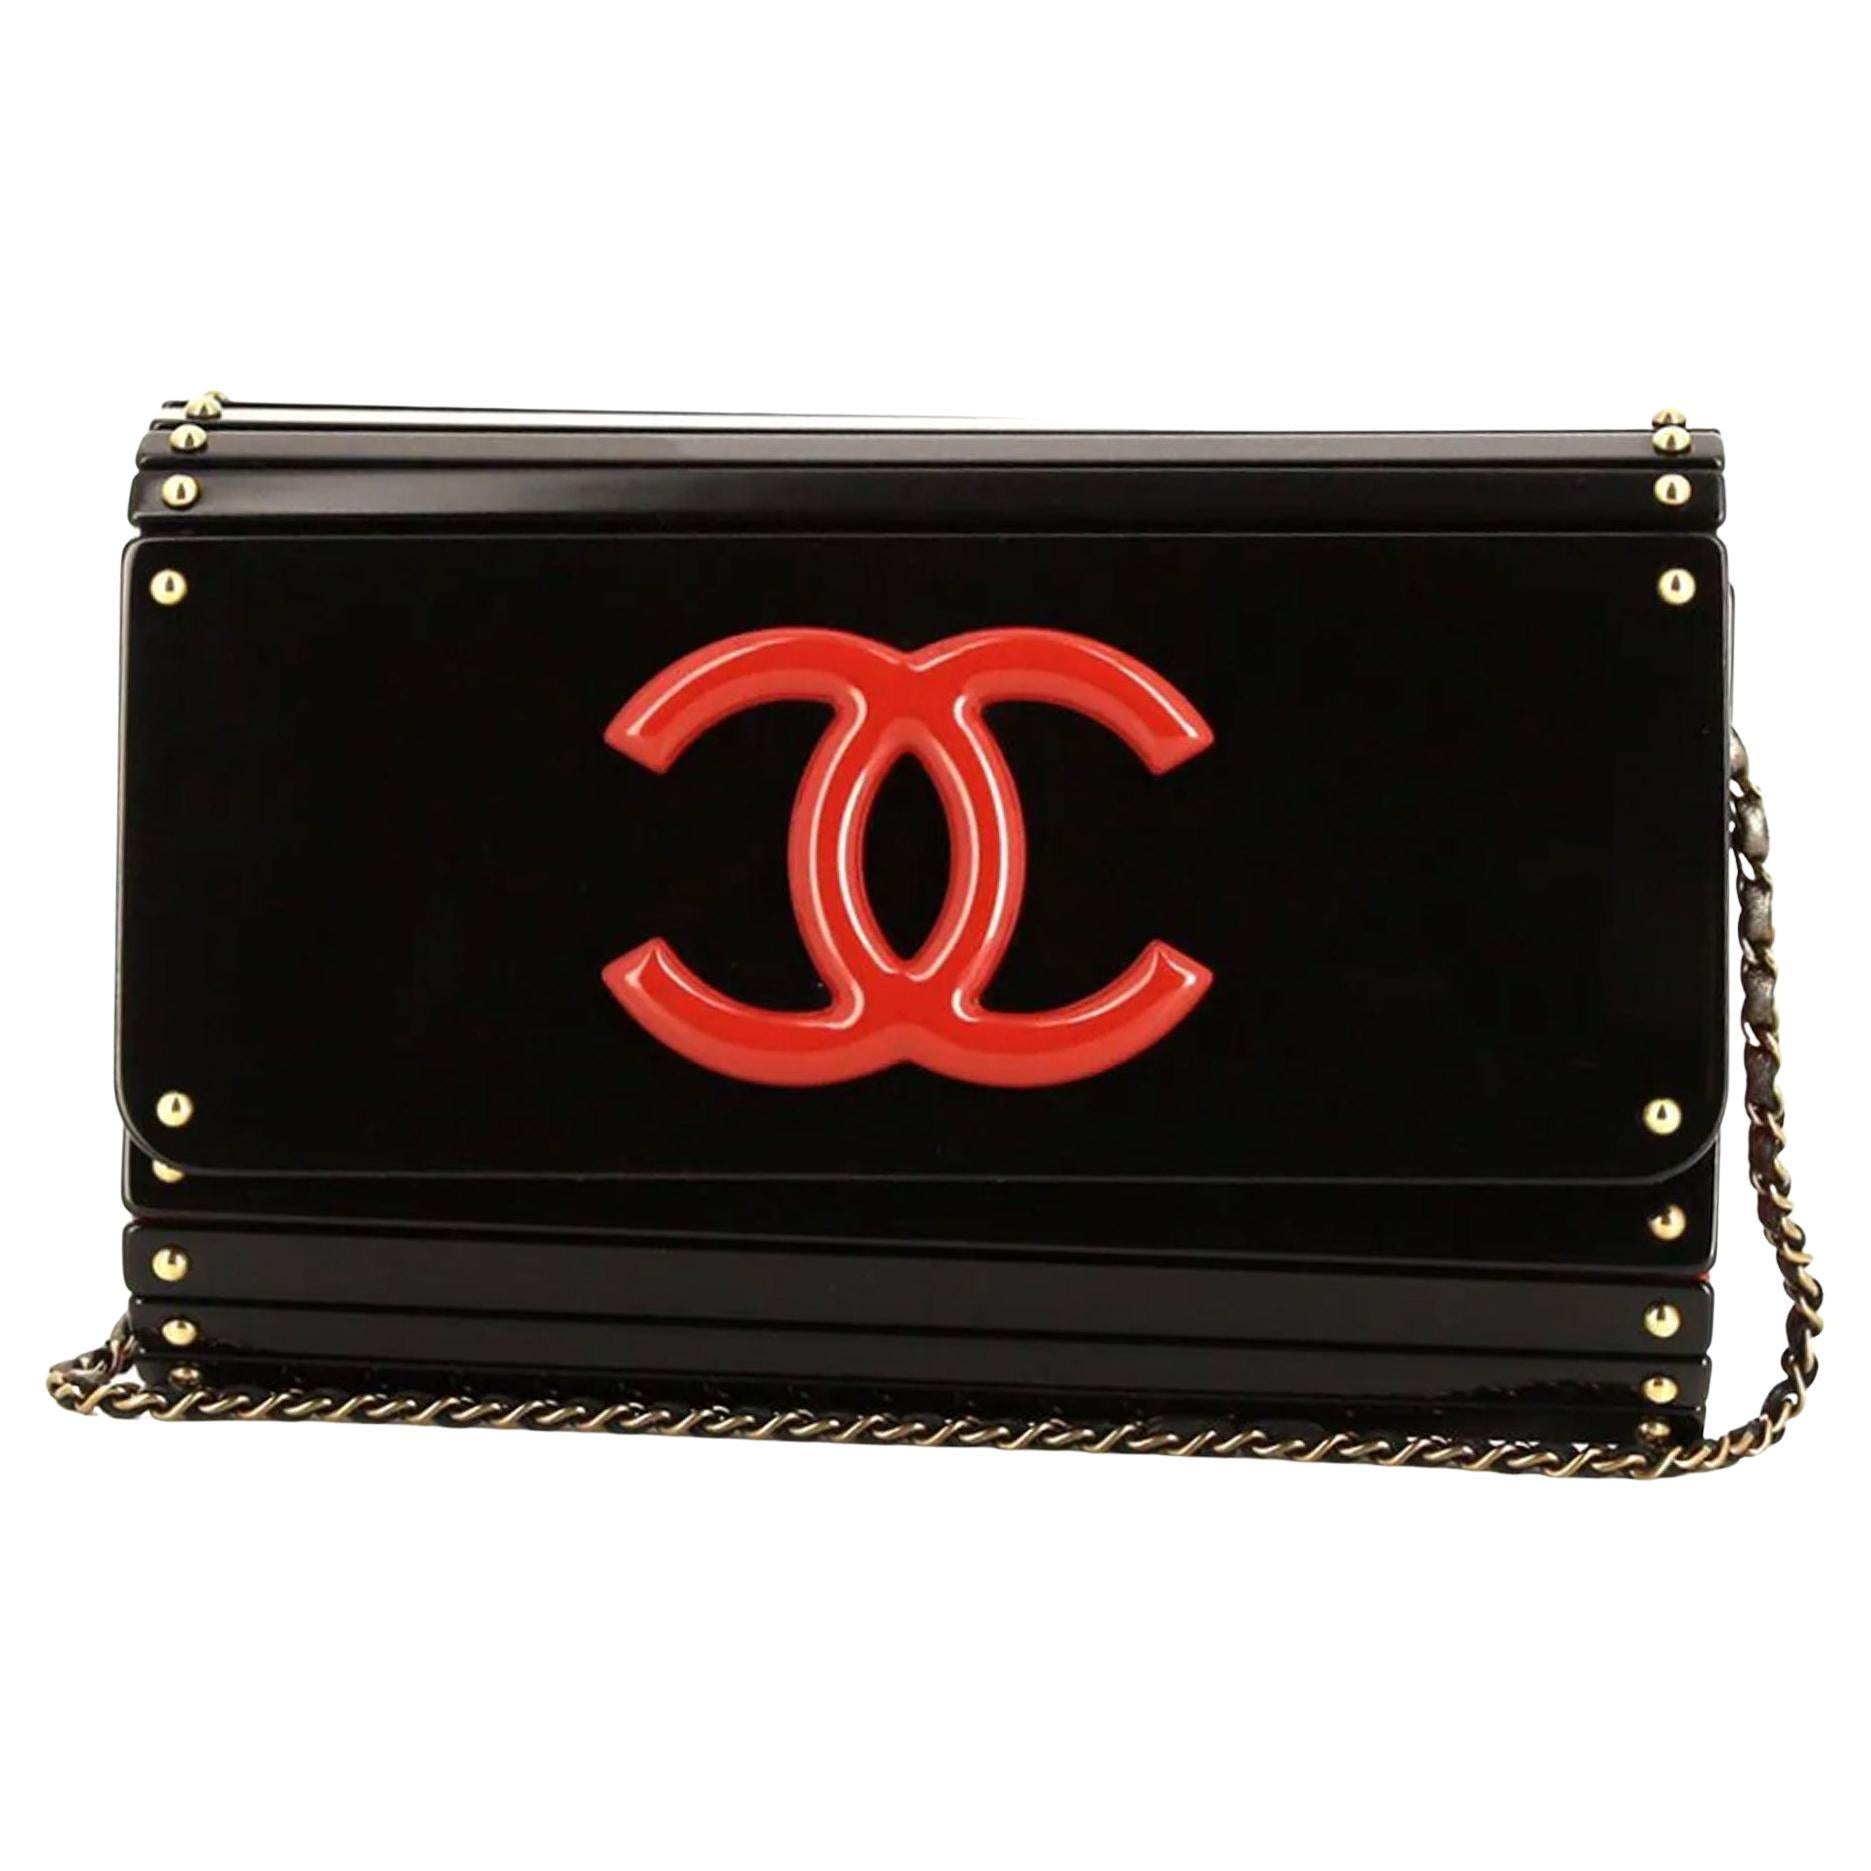 Chanel Vintage Rot & Schwarz Layered CC Umhängetasche

um 2009
schwarz/rot
leder
goldfarbene Hardware
charakteristisches, ineinander greifendes CC-Logo
nietenverzierung
klappverdeck
leder- und Kettenarmband

Hergestellt in Italien